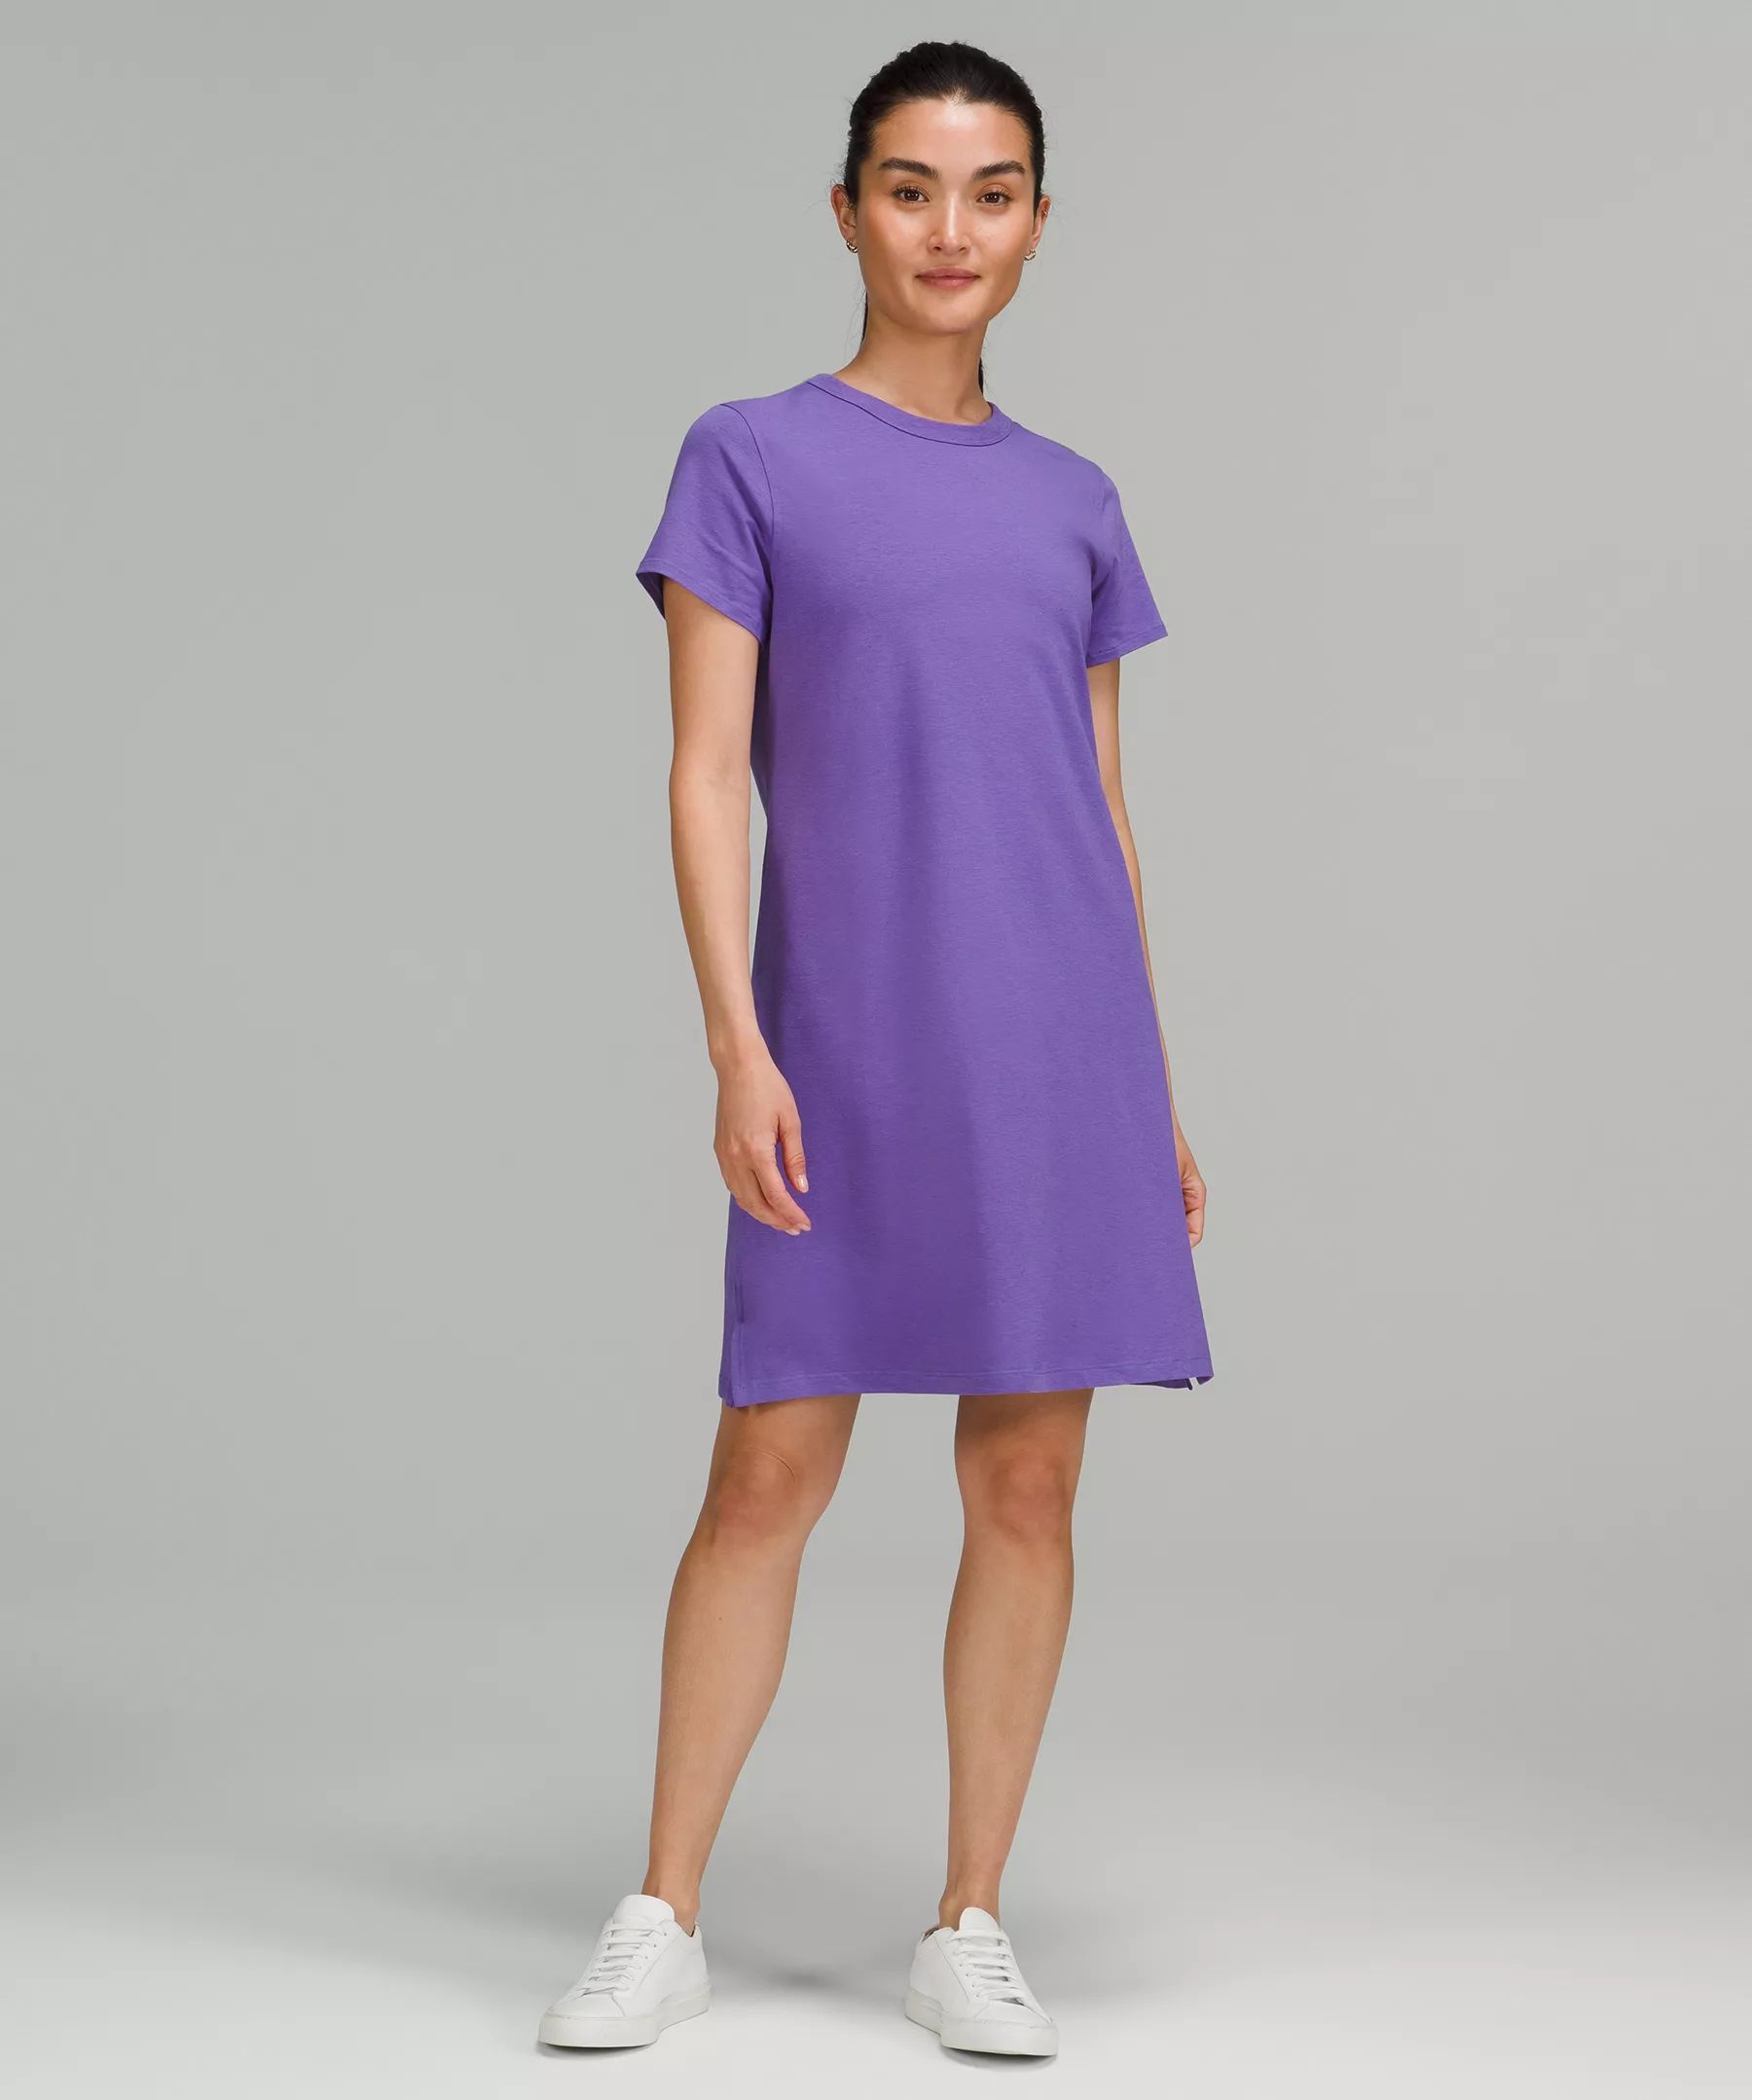 Classic-Fit Cotton-Blend T-Shirt Dress | Lululemon (US)